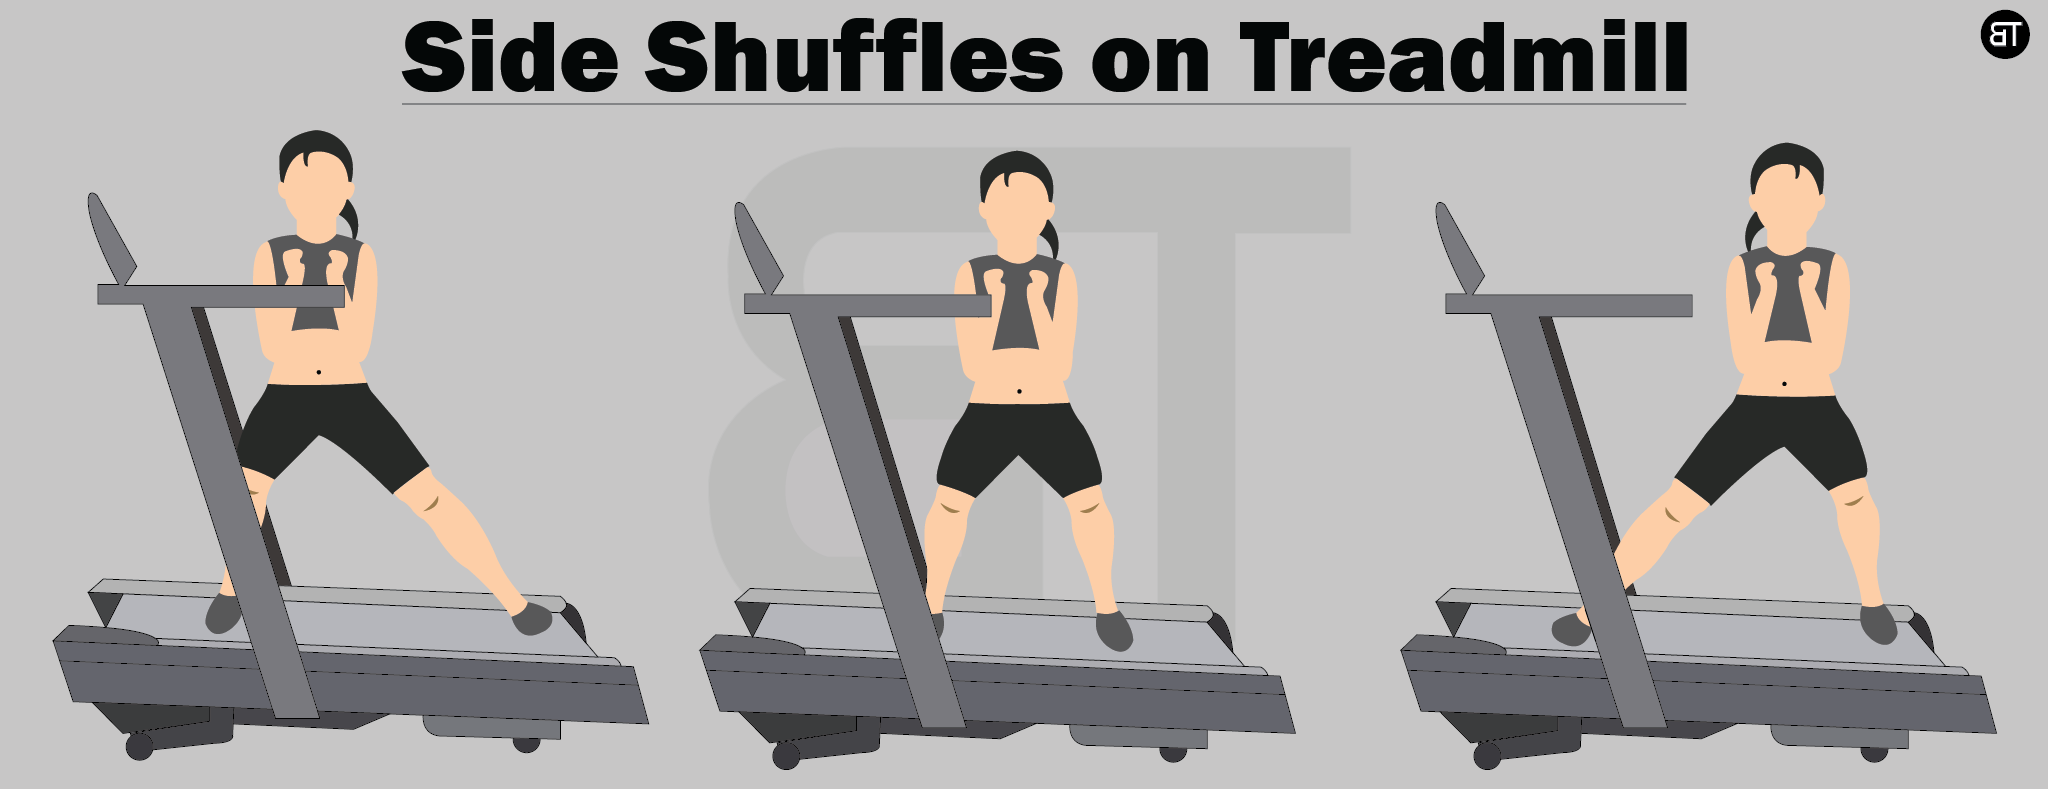 side shuffles treadmill